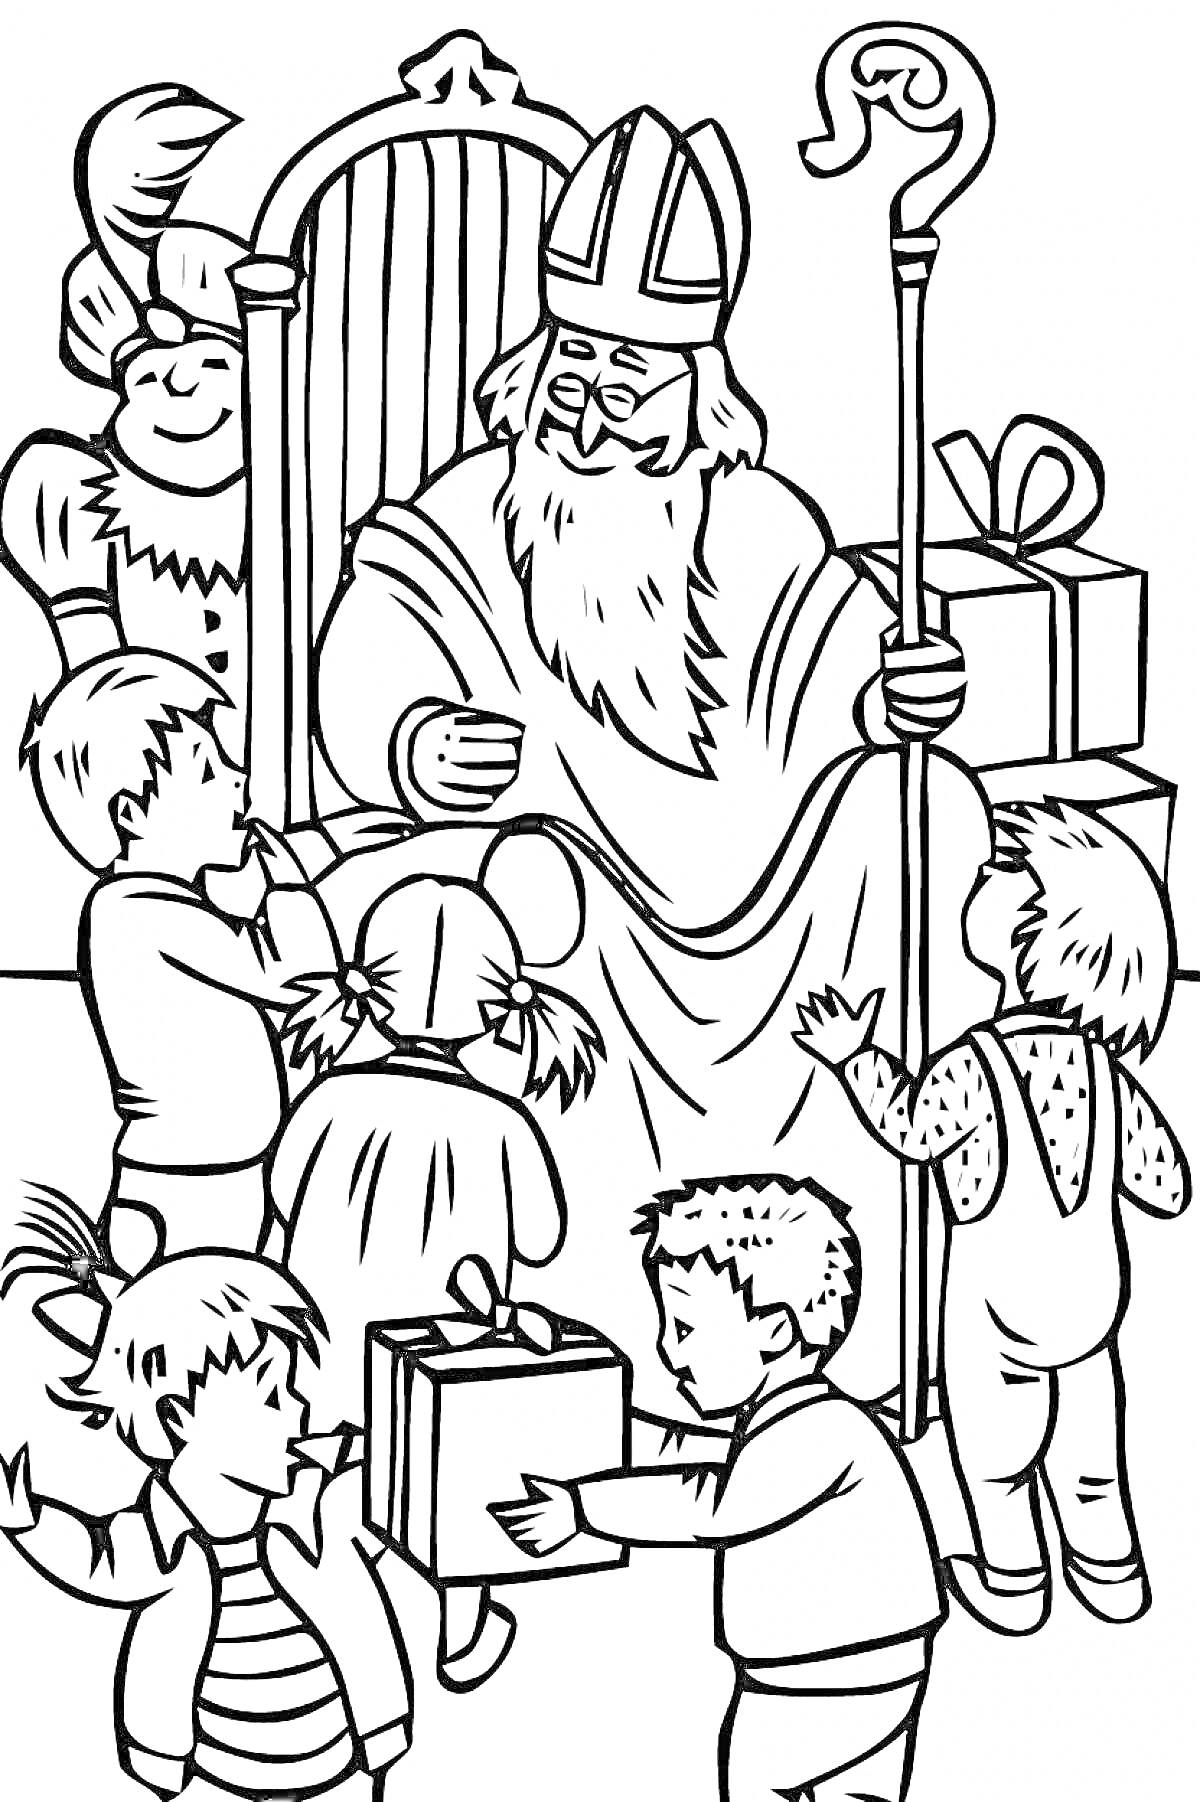 Раскраска Николай сидит на троне и раздает подарки детям, рядом помощник Николая